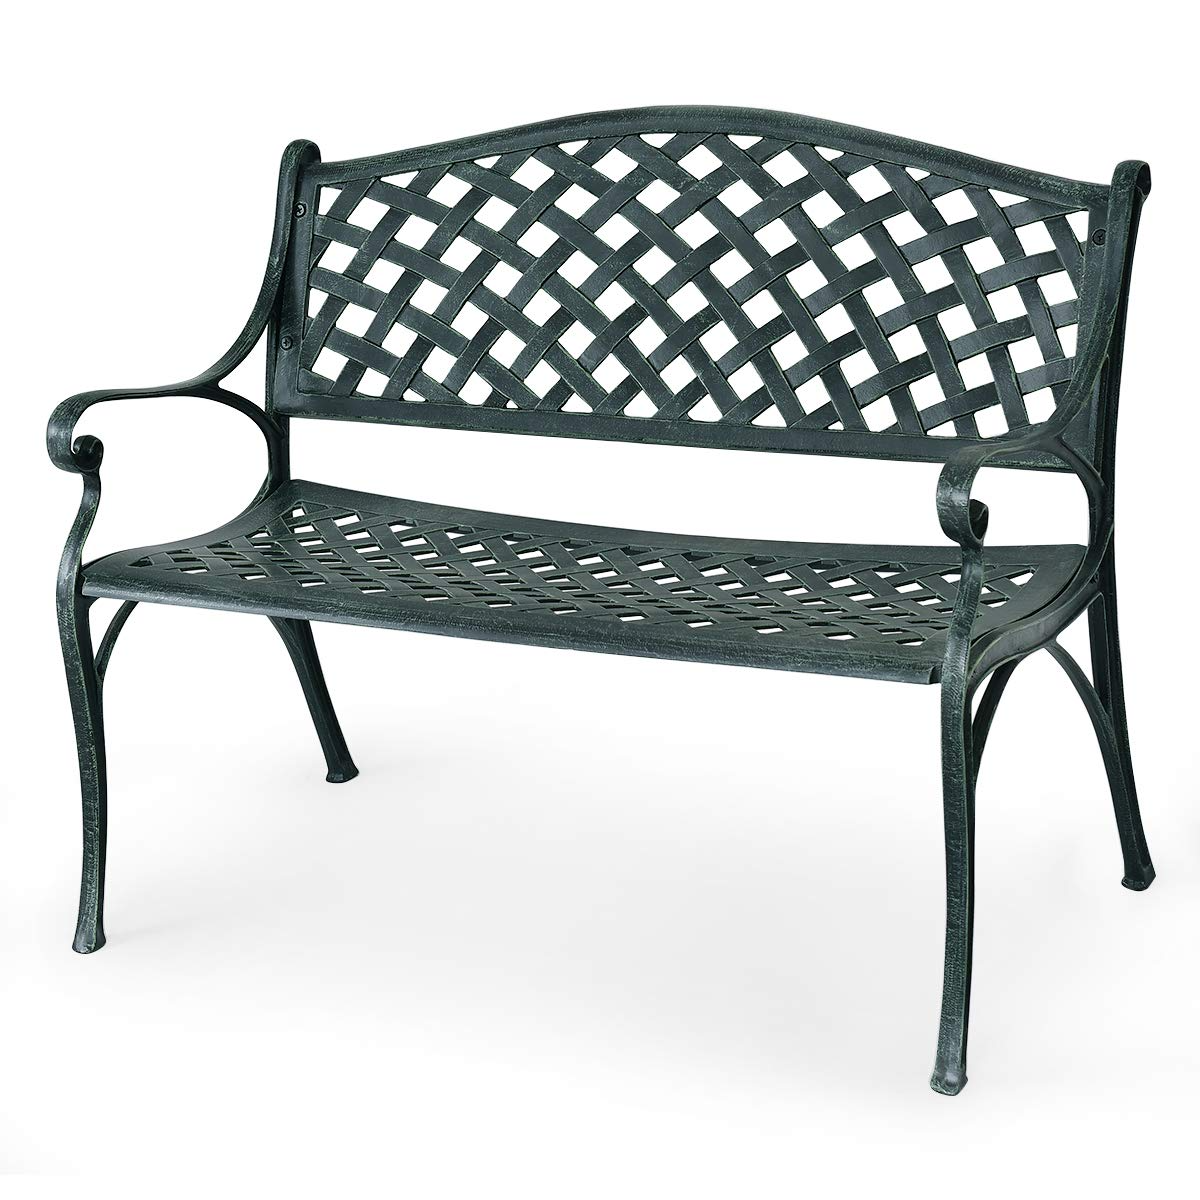 Giantex 40" Outdoor Antique Garden Bench Aluminum Frame Seats Chair Patio Garden Furni(Ancient Green)